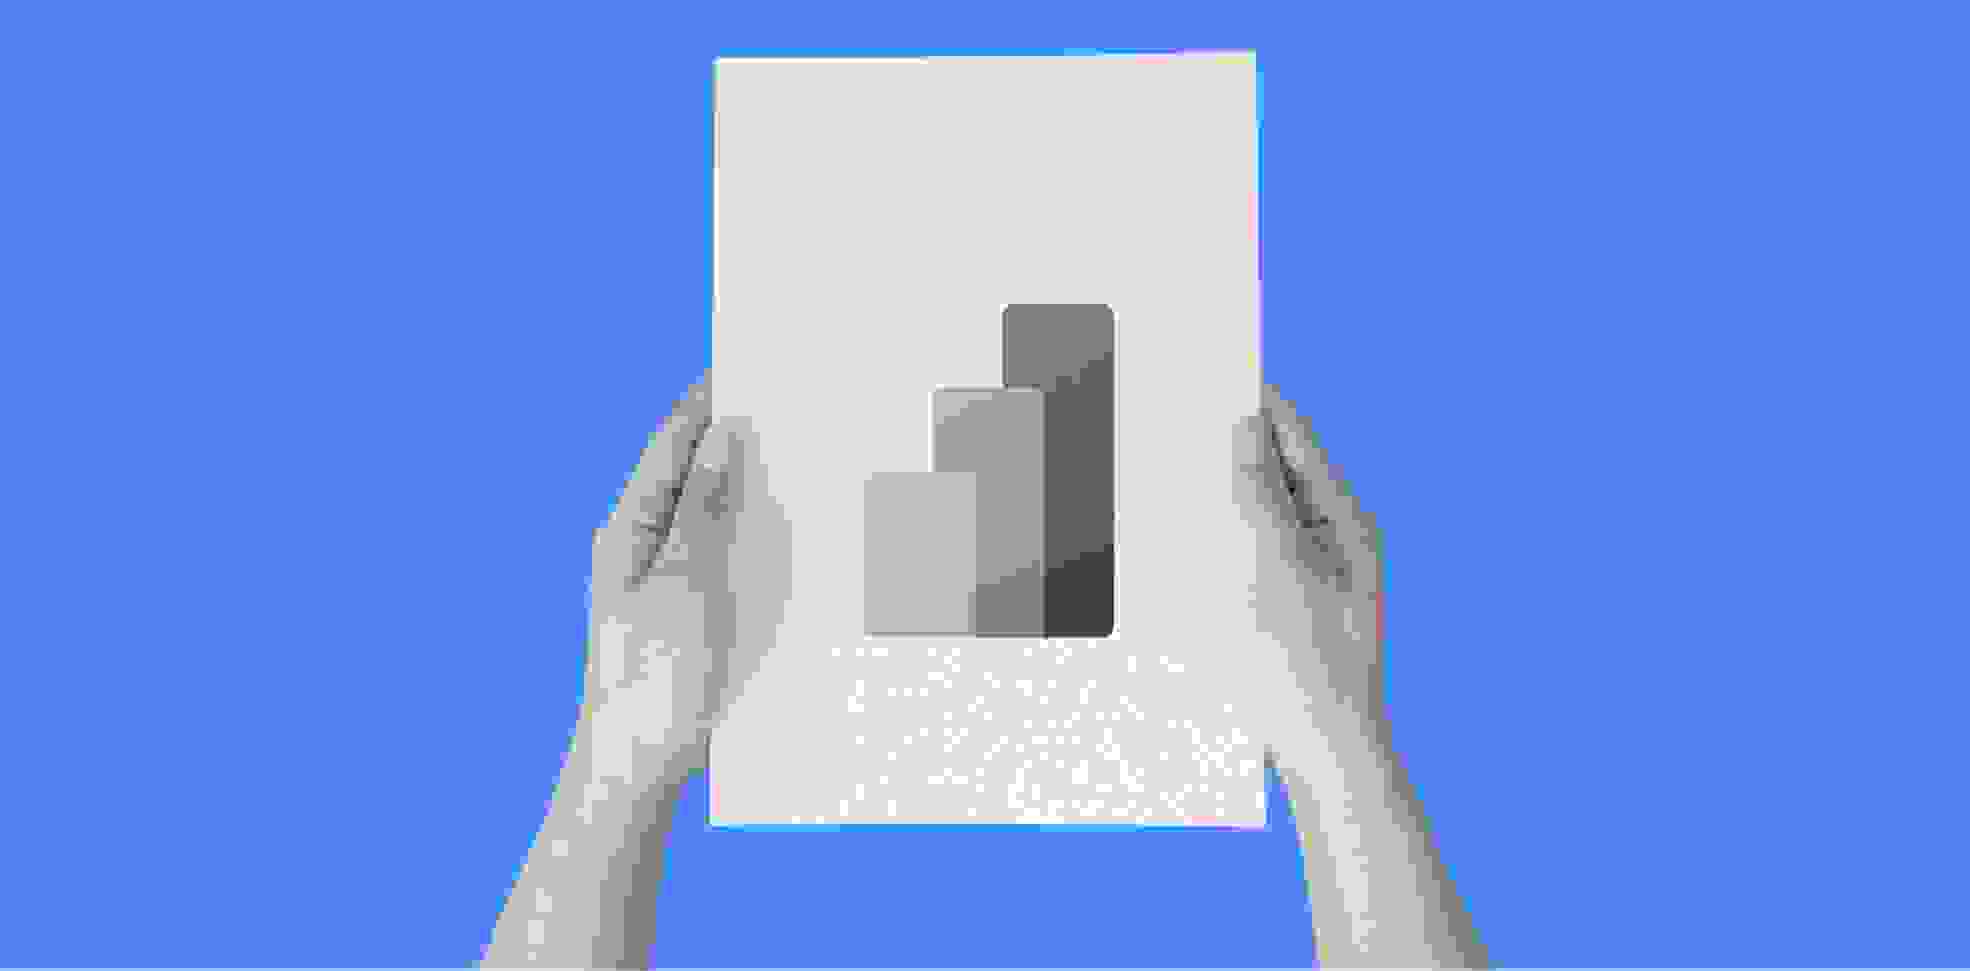 manos sosteniendo una hoja de papel con un gráfico de barras sobre un fondo azul